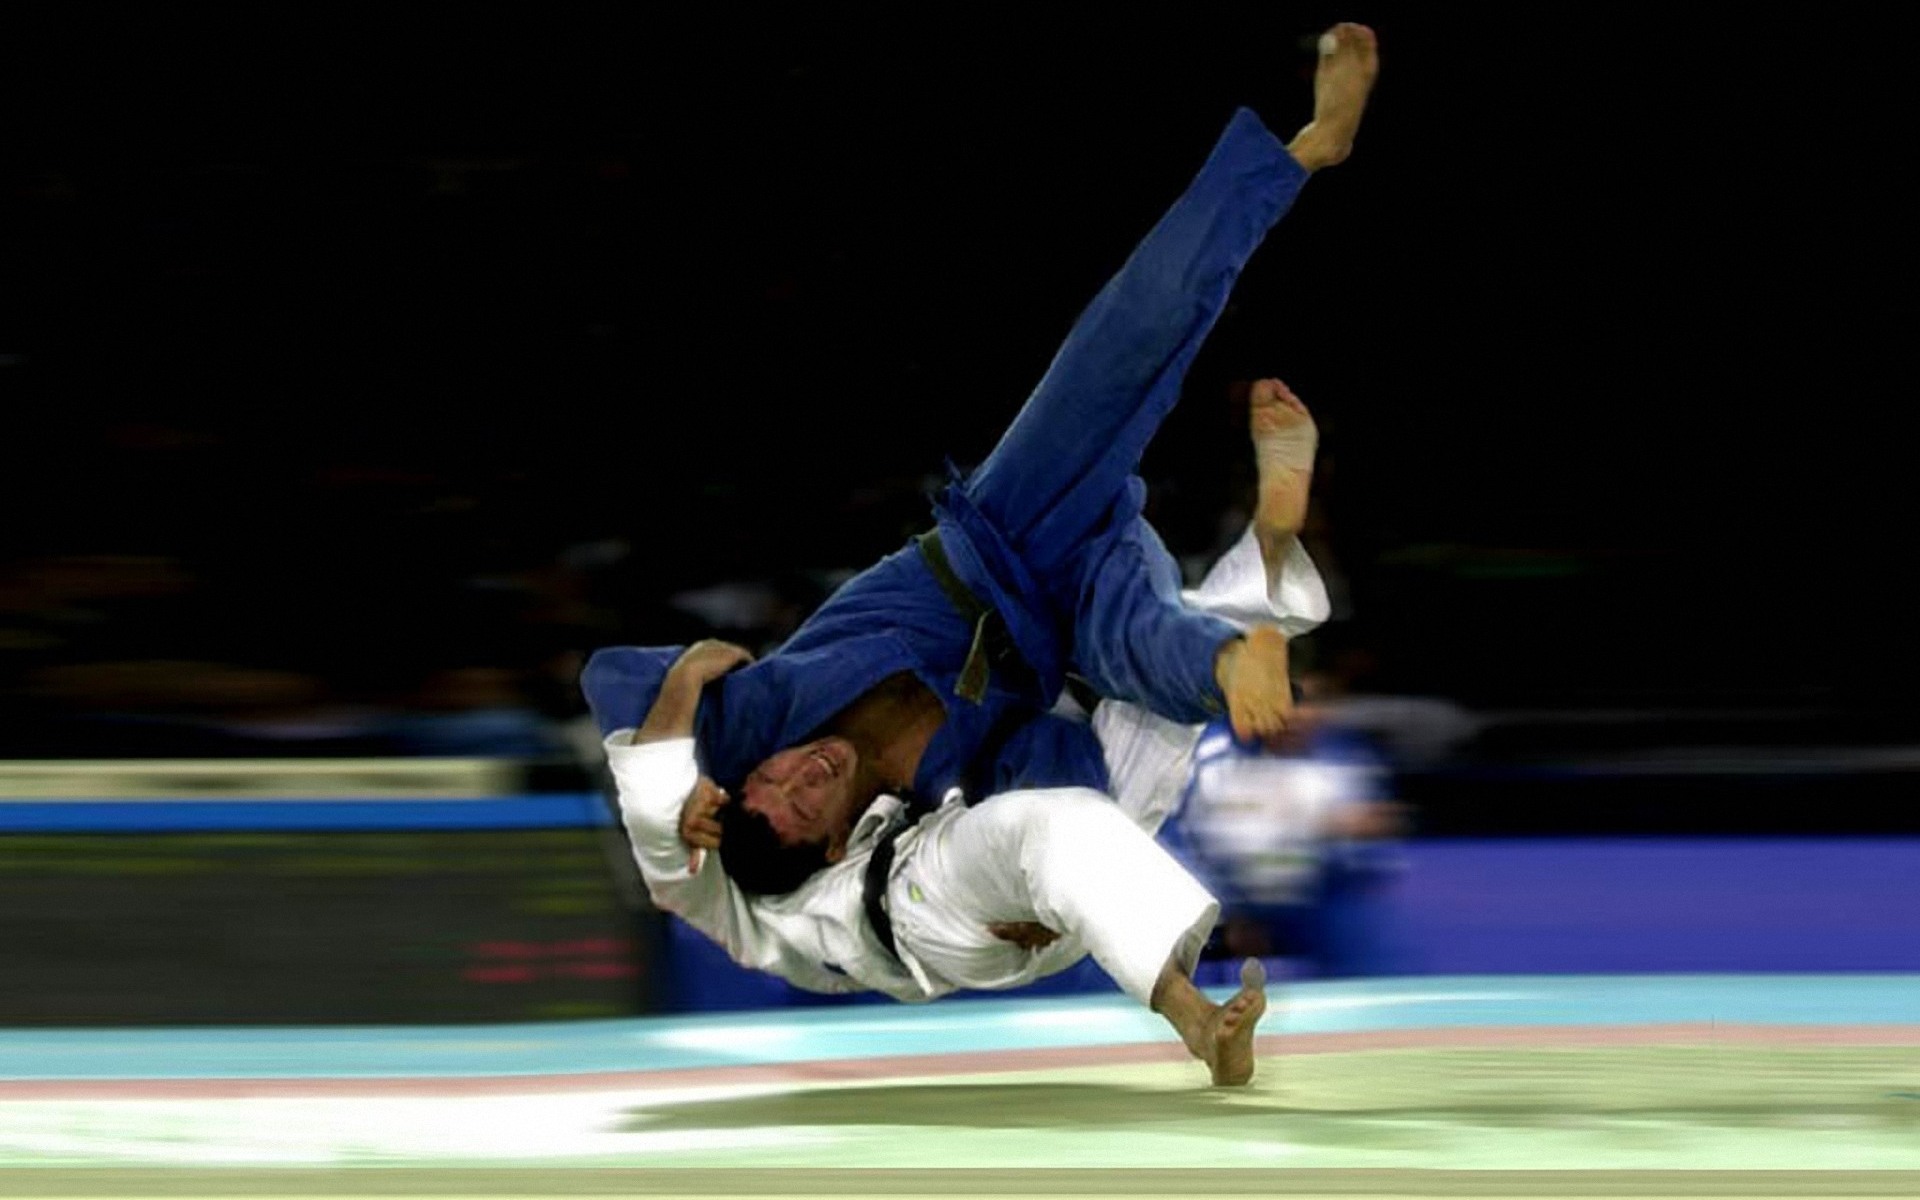 http://www.hebraicario.com.br/wp-content/uploads/2013/09/judo.jpg